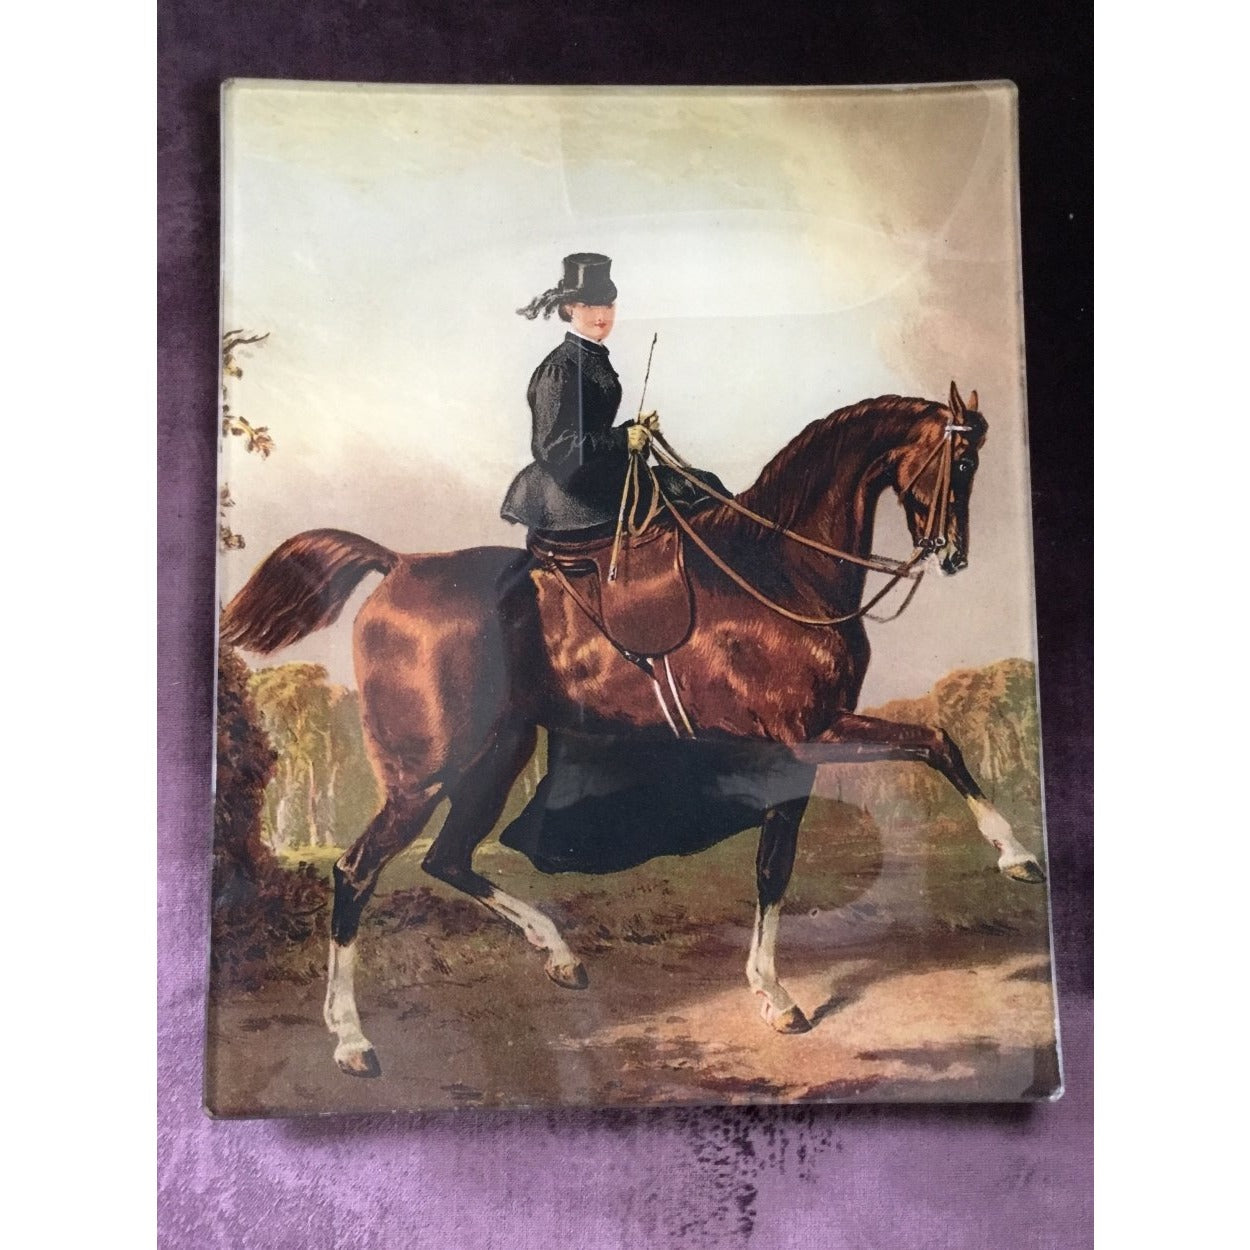 Vintage glass decoupage plate - "Elegant side-saddle"